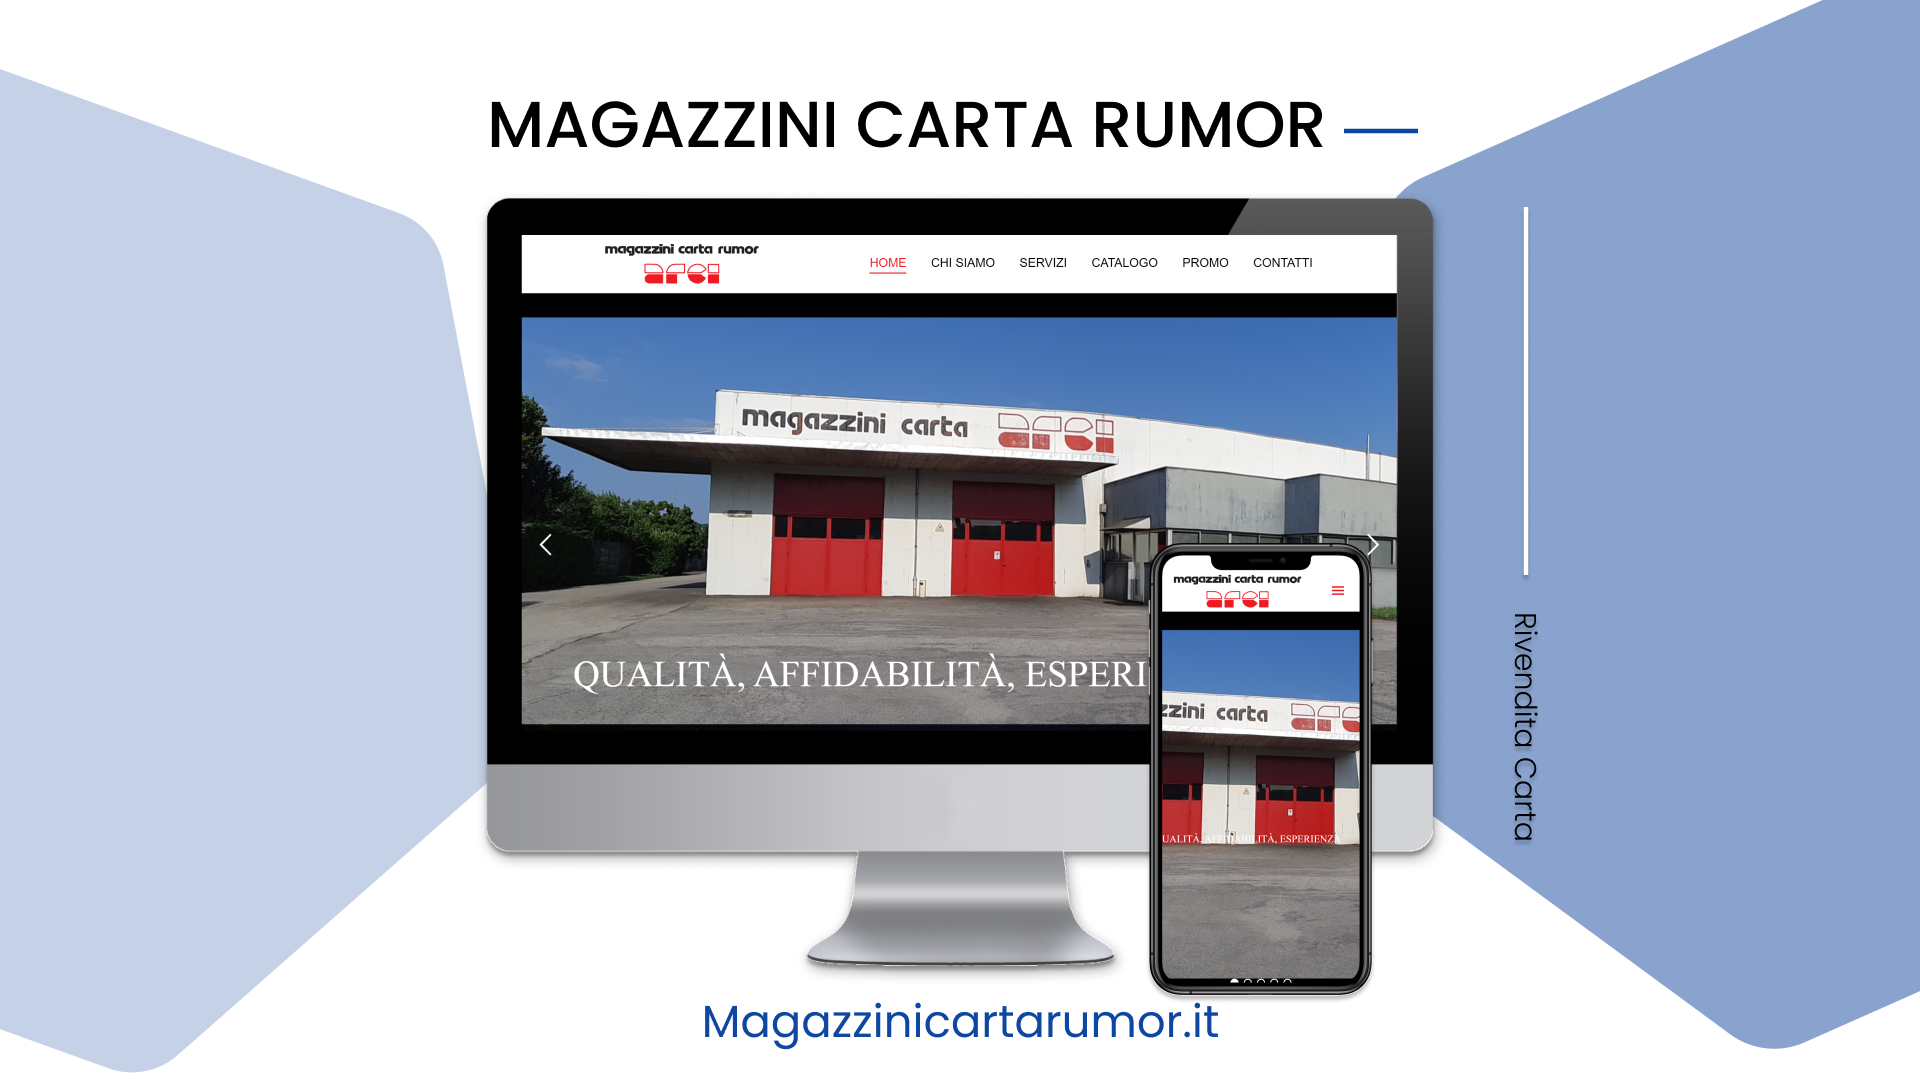 Magazzini Carta Rumor